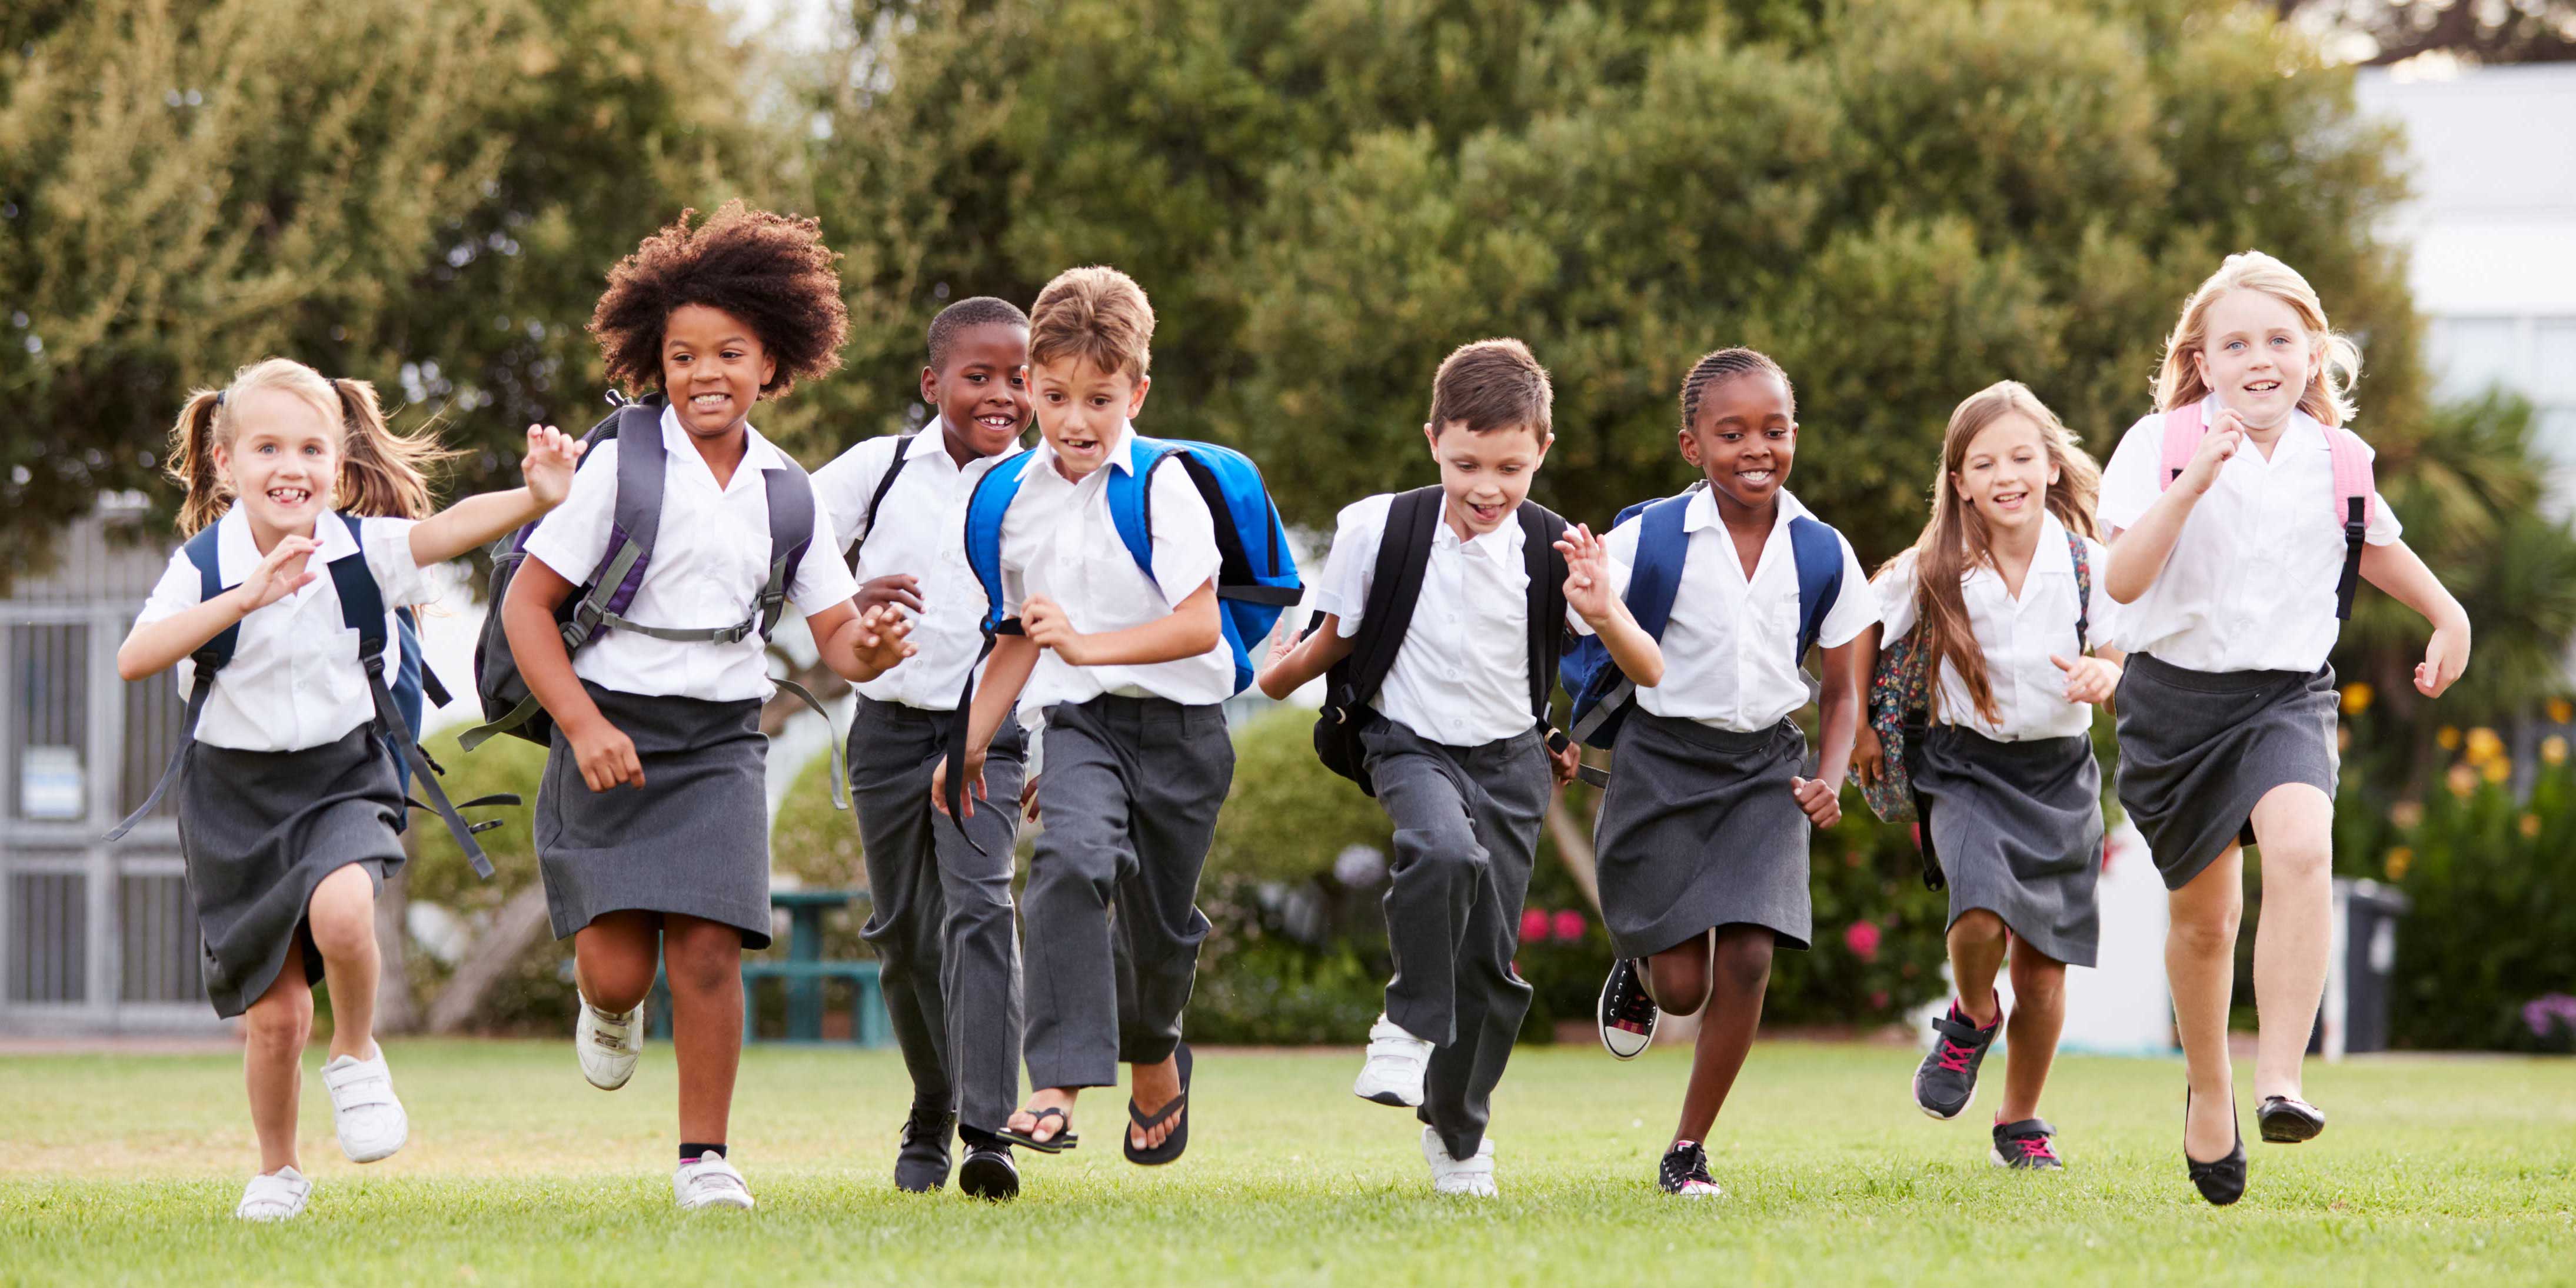 School kids running through a park